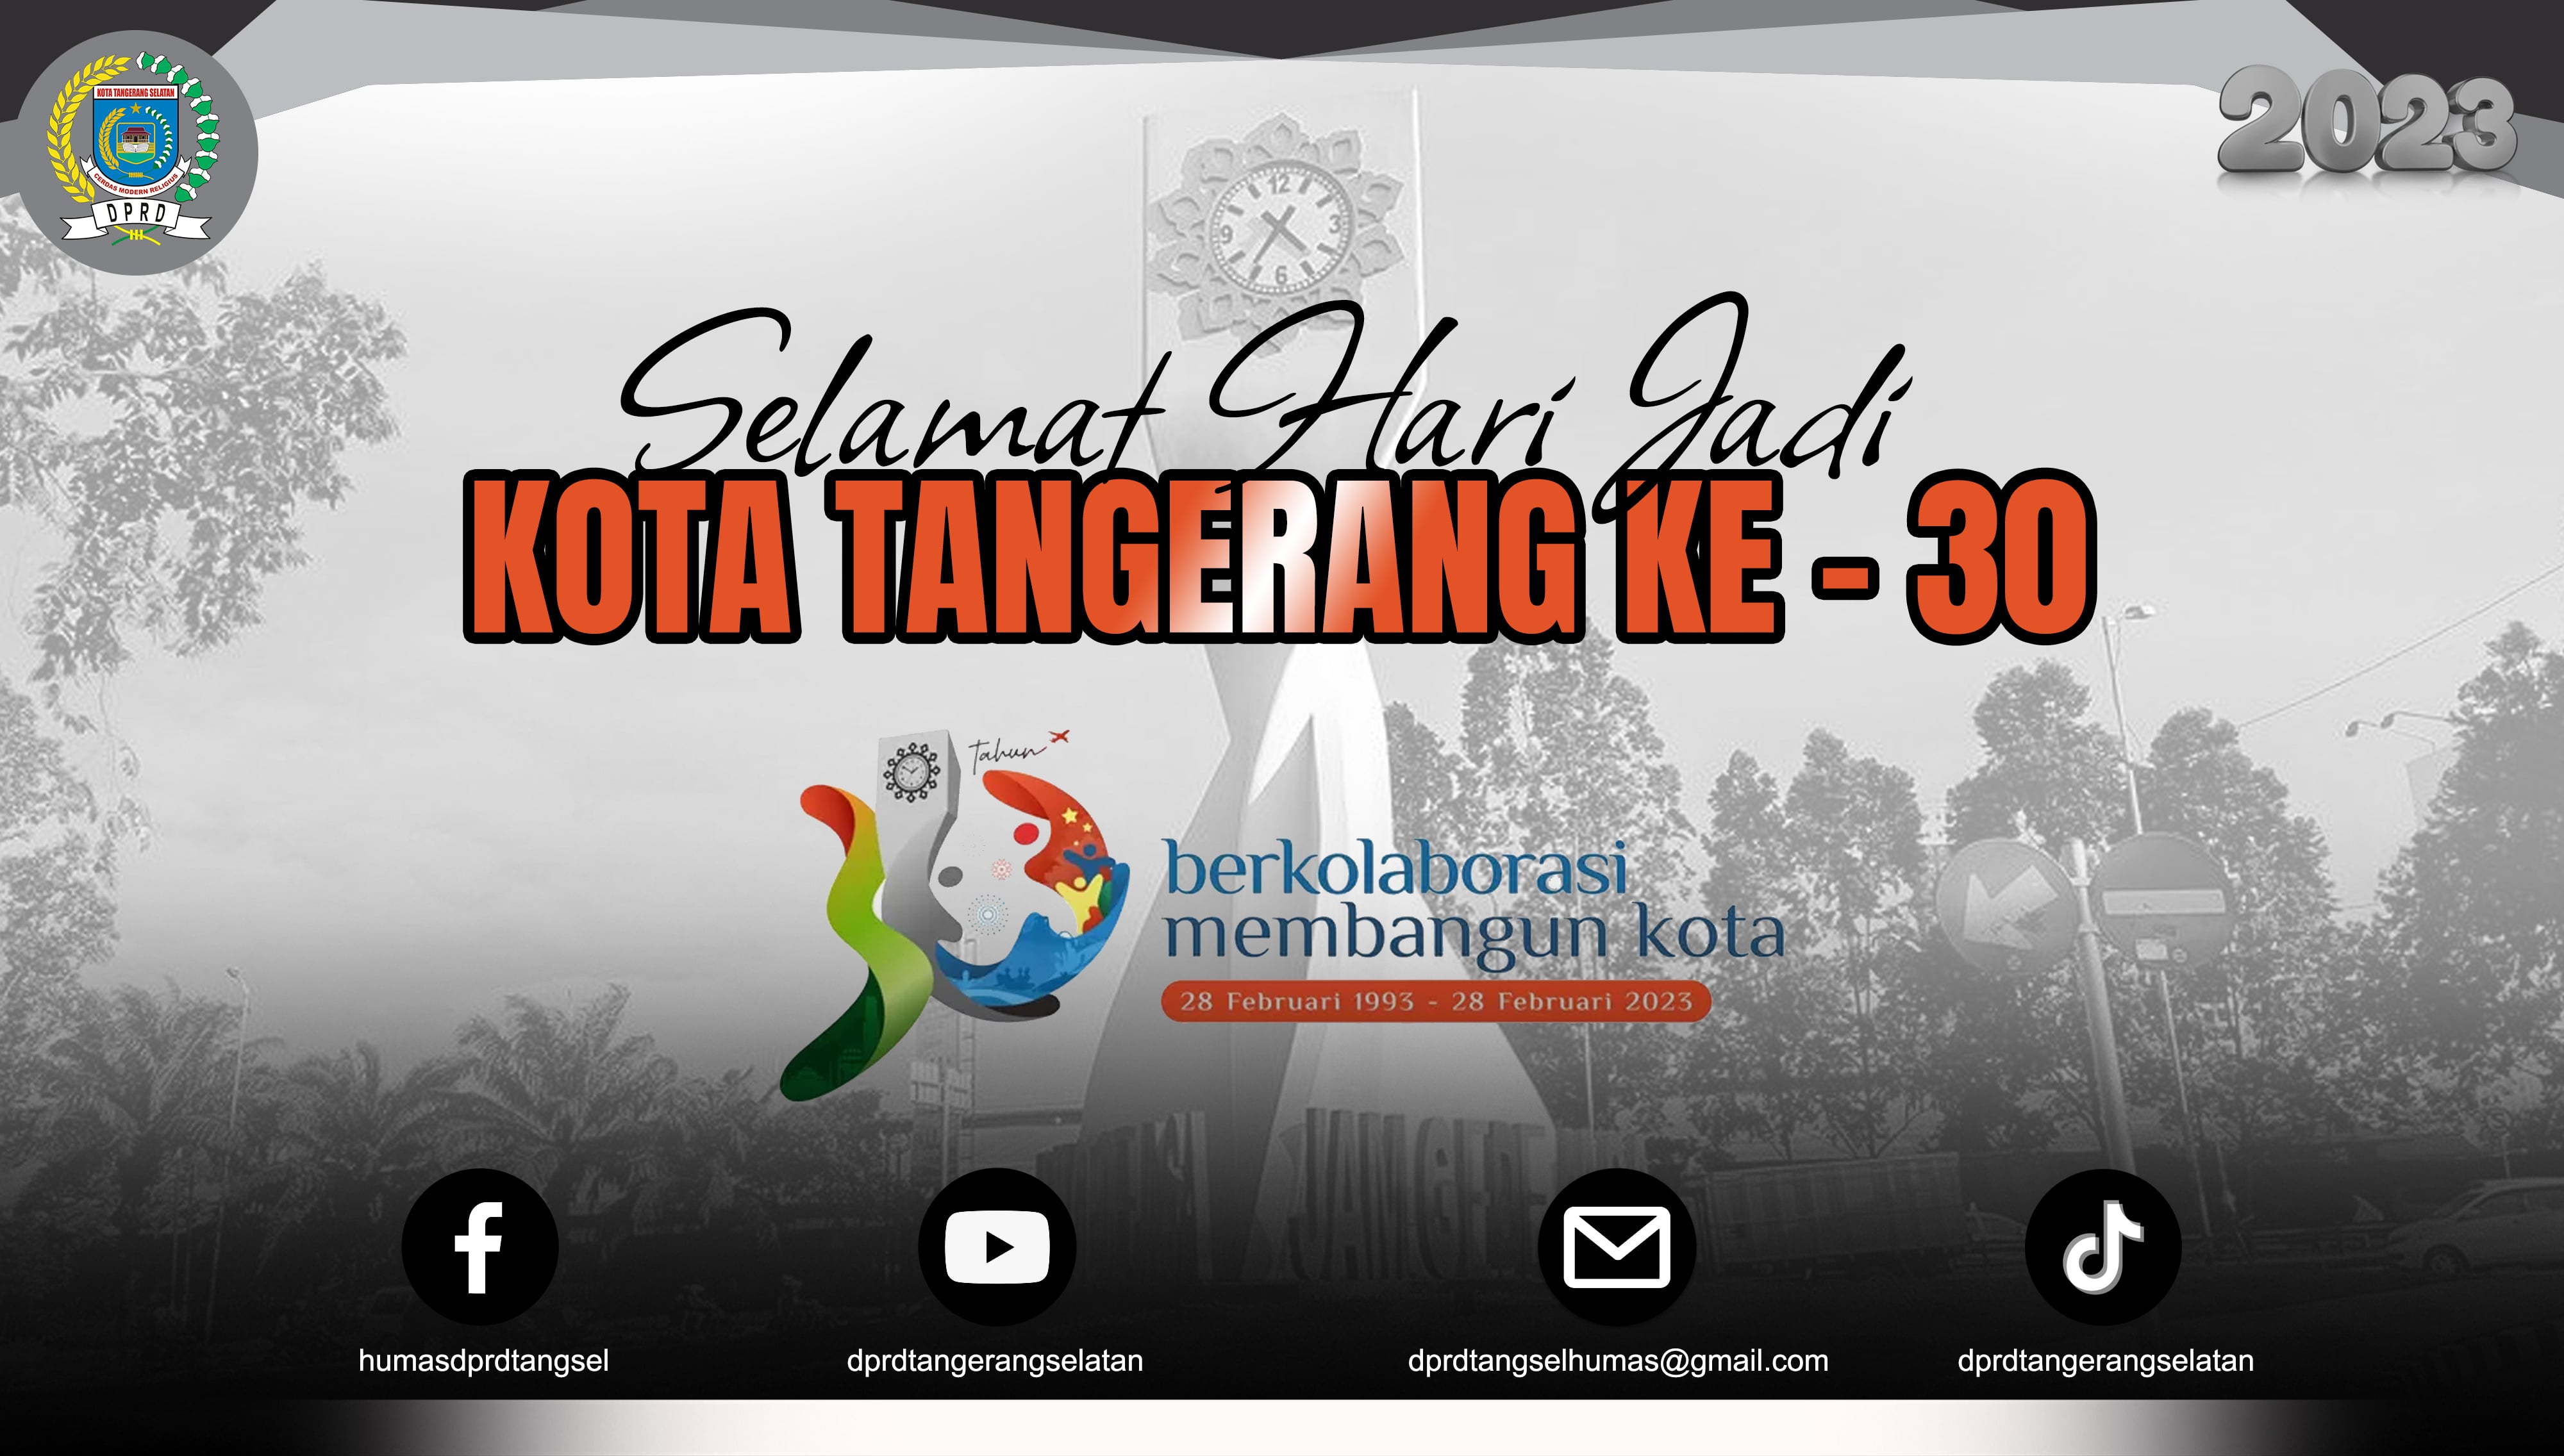 Selamat Hari Jadi Kota Tangerang ke-30 Tahun. 28 Februari 2023.